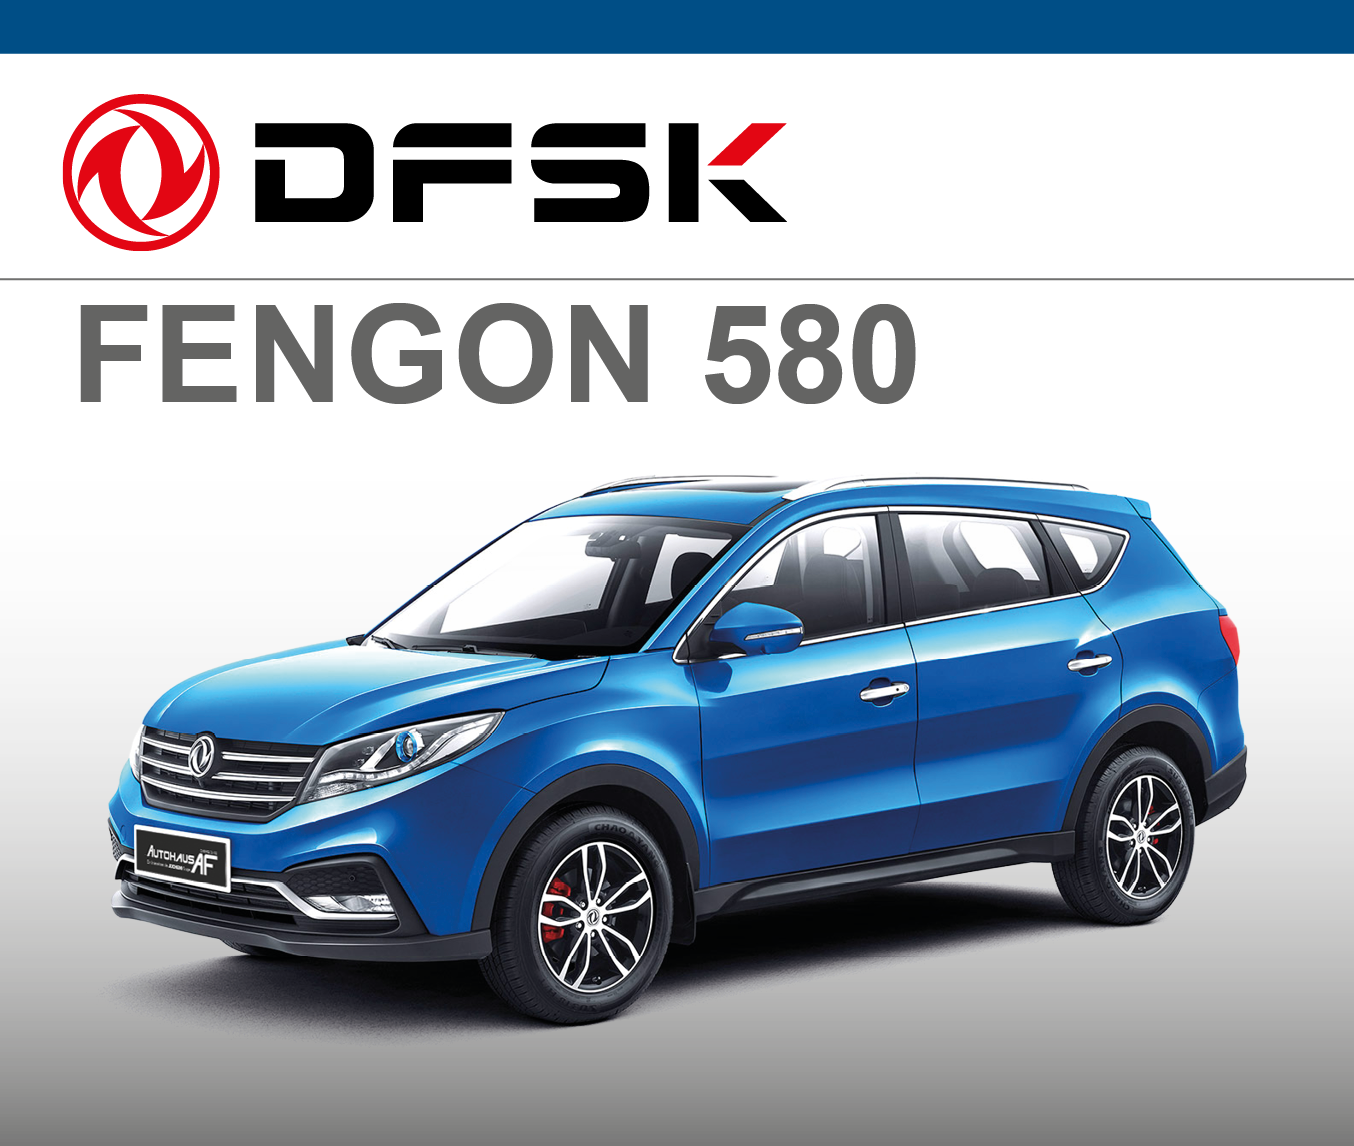 DFSK Fengon 580 | Autohaus AF | Neunkirchen | Jochem Gruppe